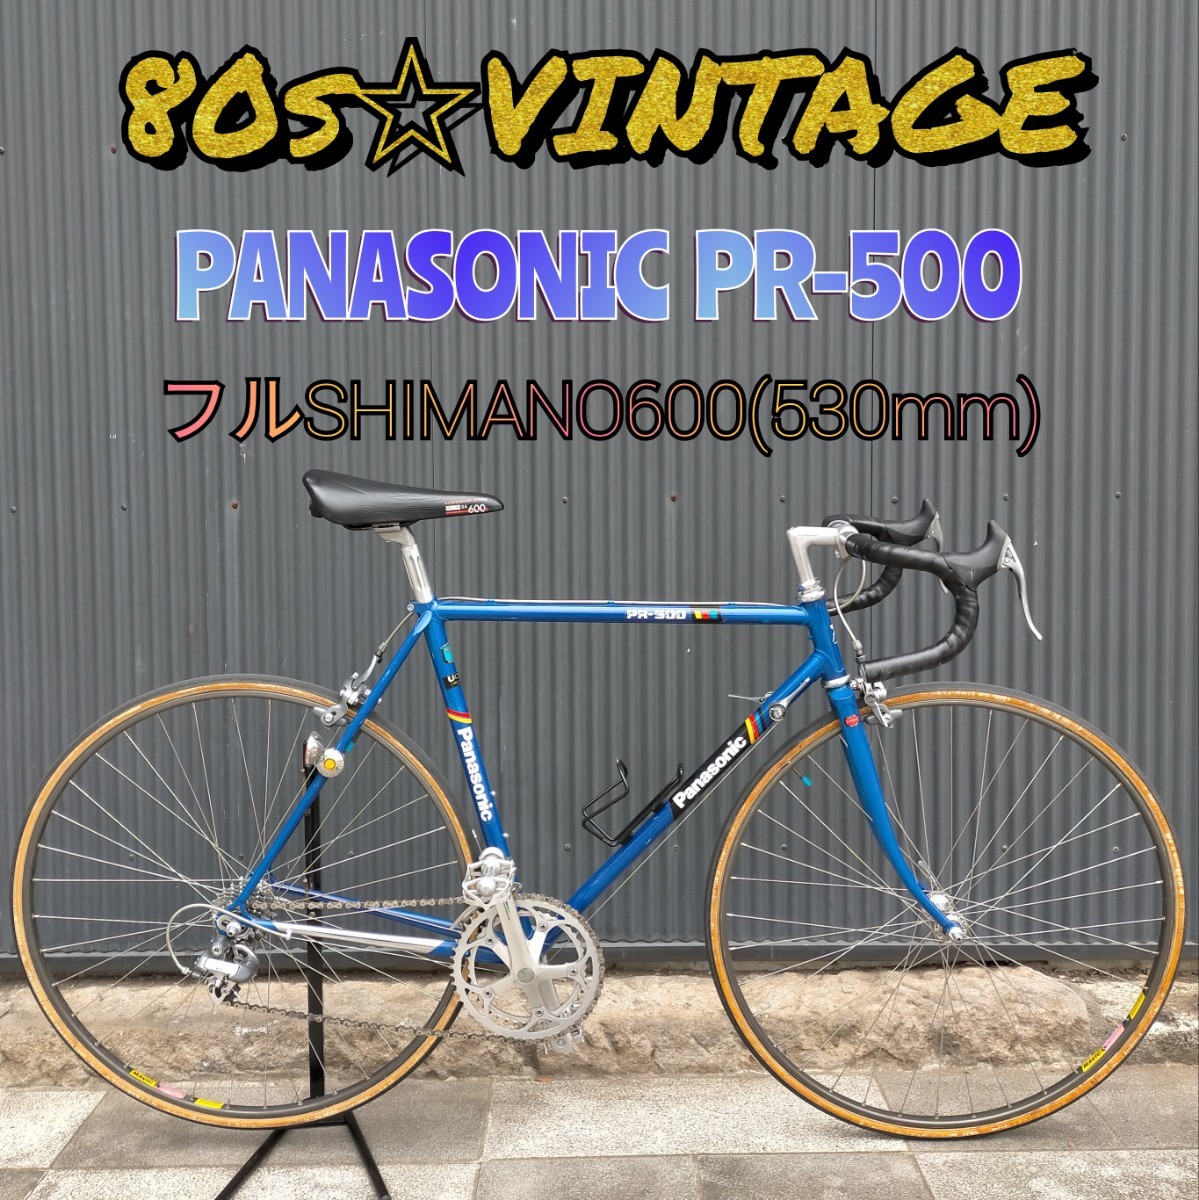 【80s☆状態◎】パナソニック・PR-500 フルSHIMANO600 (サイズCT530mm) PANASONIC ロードバイク シマノ600_画像1